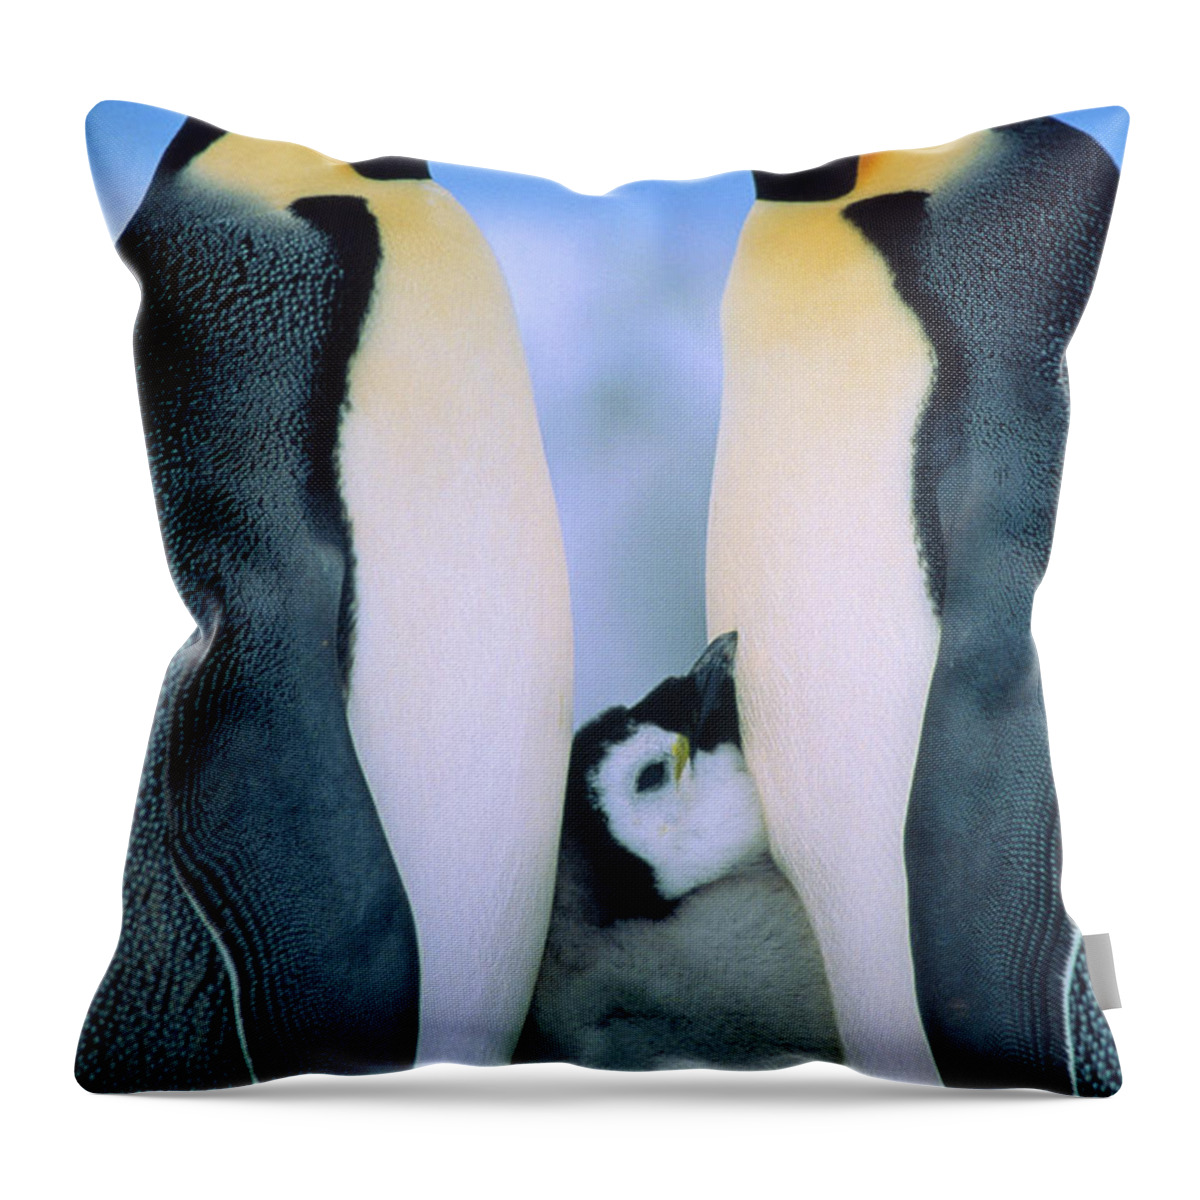 00140141 Throw Pillow featuring the photograph Emperor Penguin Family #1 by Tui de Roy